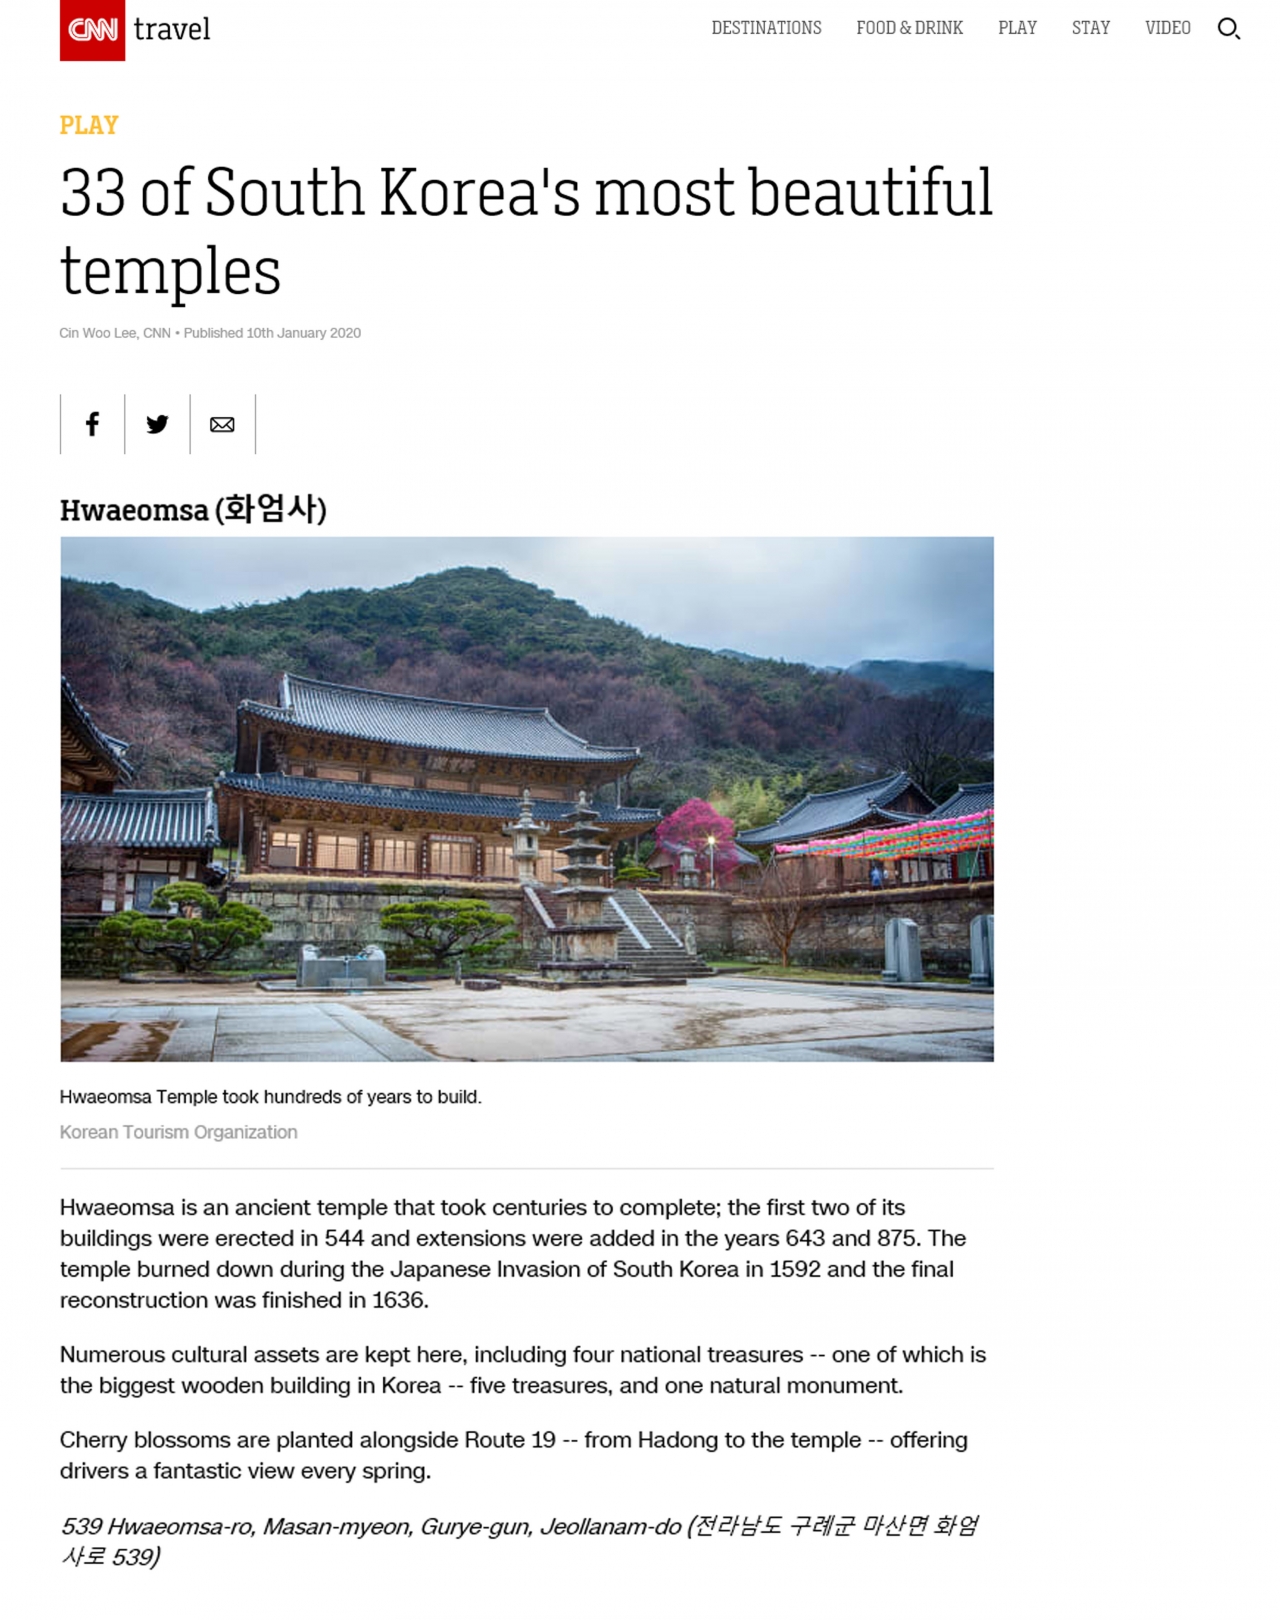 CNN이 한국의 아름다운 사찰 33곳을 선정했다. 화엄사를 비롯한 구례군의 사찰 4곳이 선정되며 구례군은 아름다운 사찰이 가장 많은 지역으로 소개됐다.